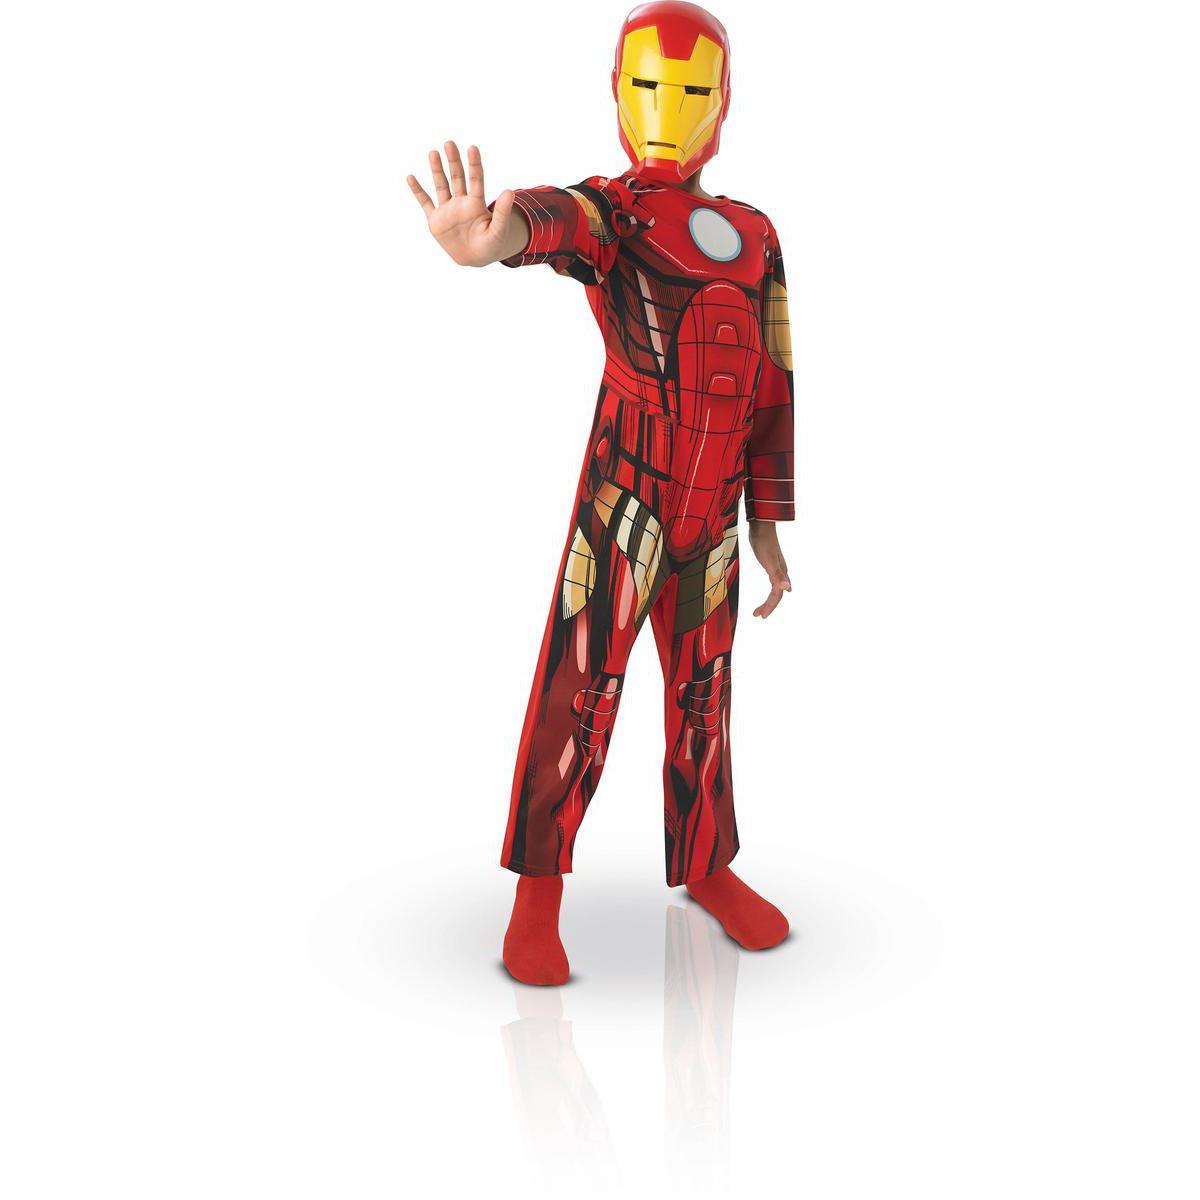 Déguisement Iron Man en polyester - Taille L - Rouge, Jaune